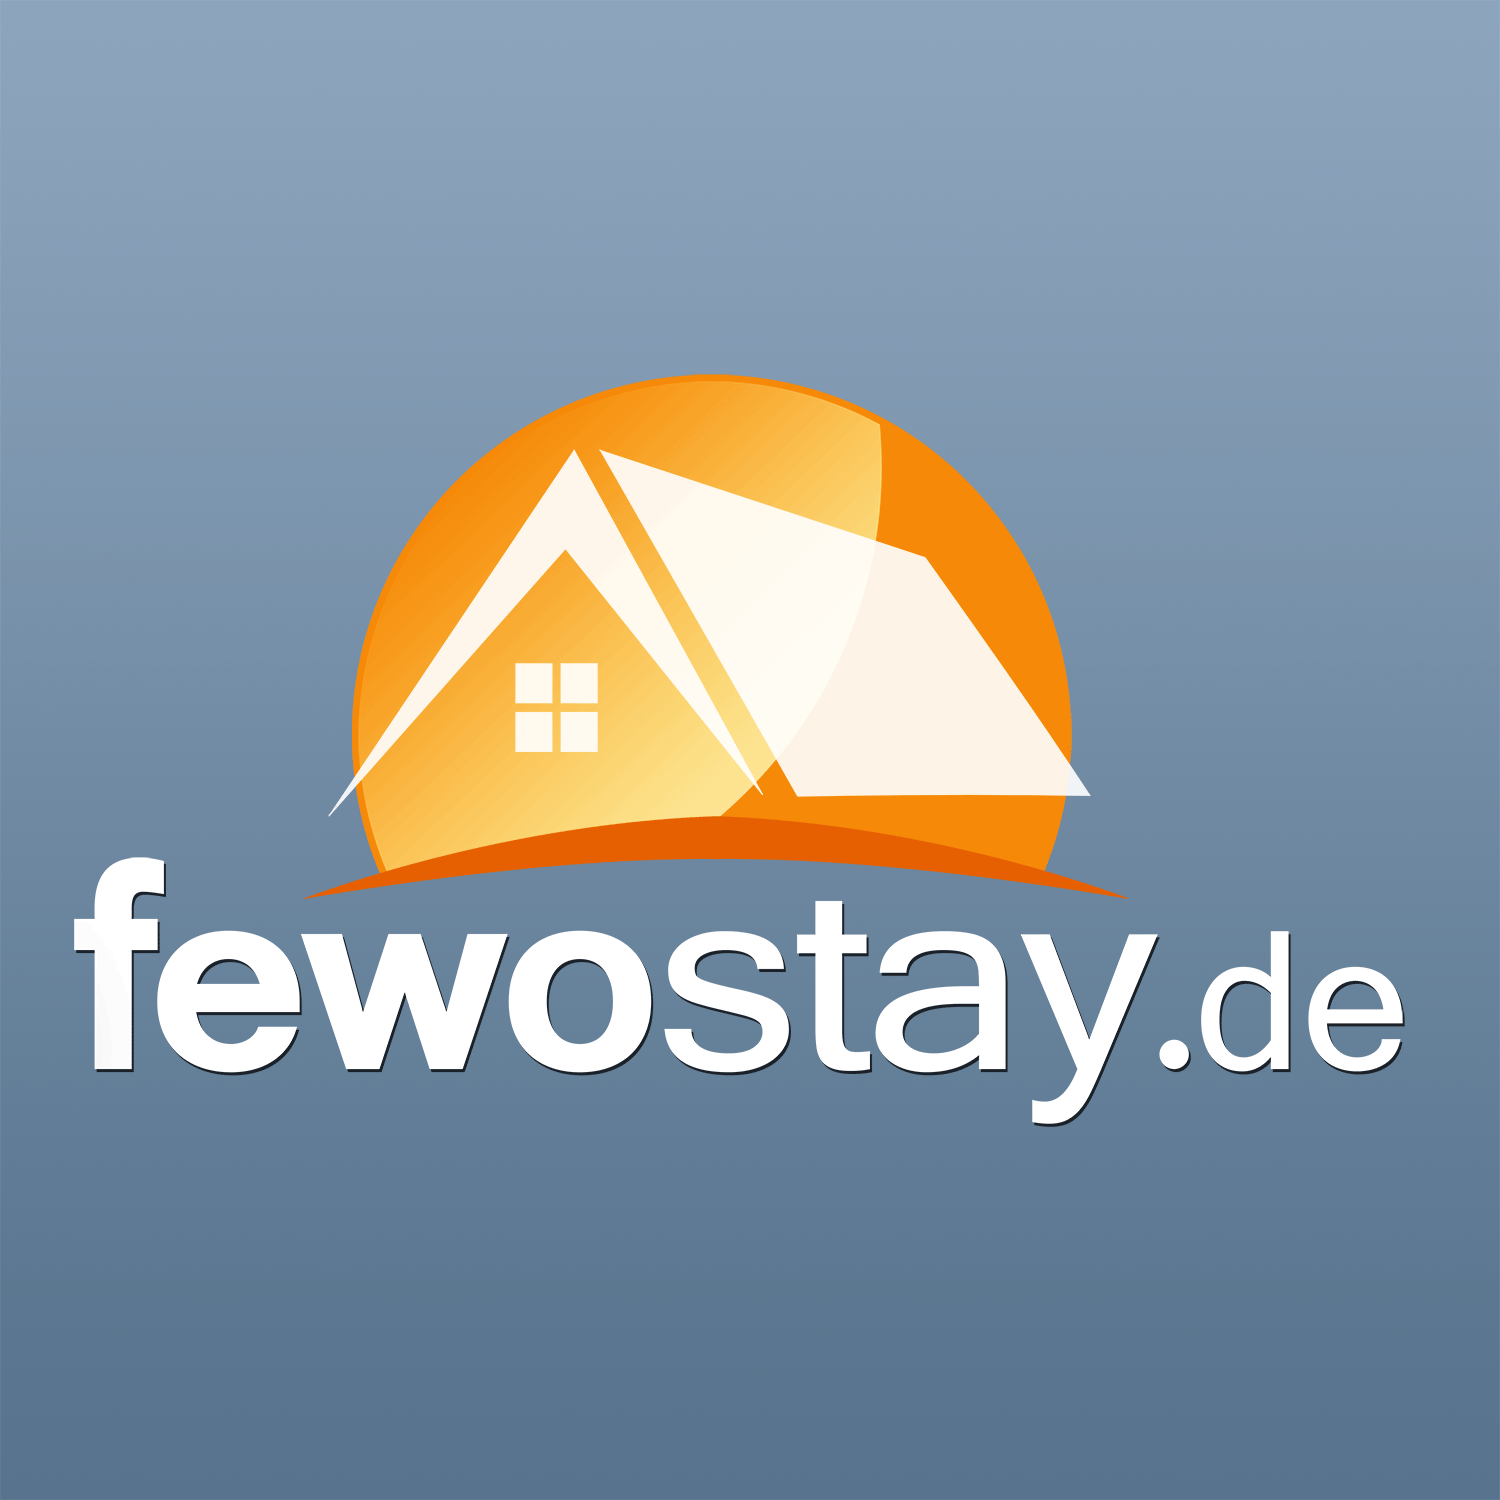 (c) Fewostay.de